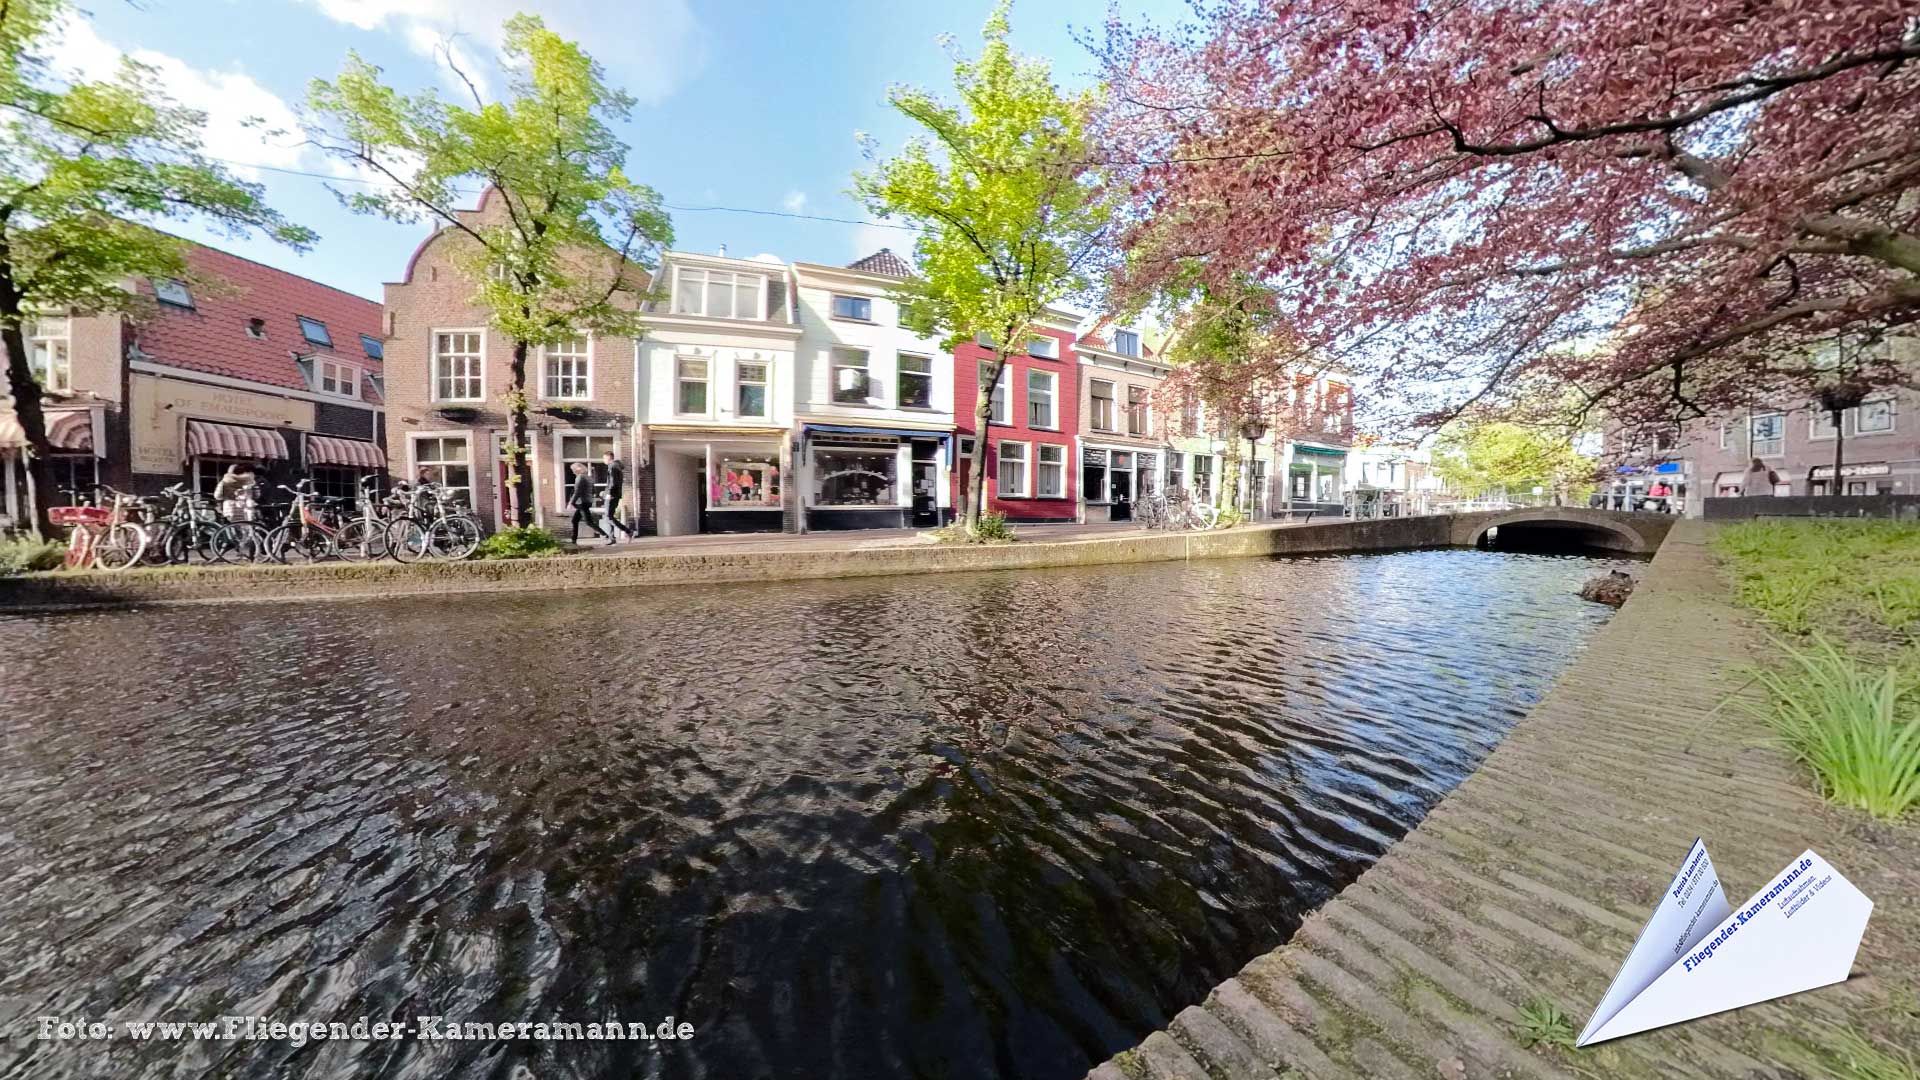 Vrouwenregt Schout van der Meerbrug in Delft (NL) - 360°-Panorama